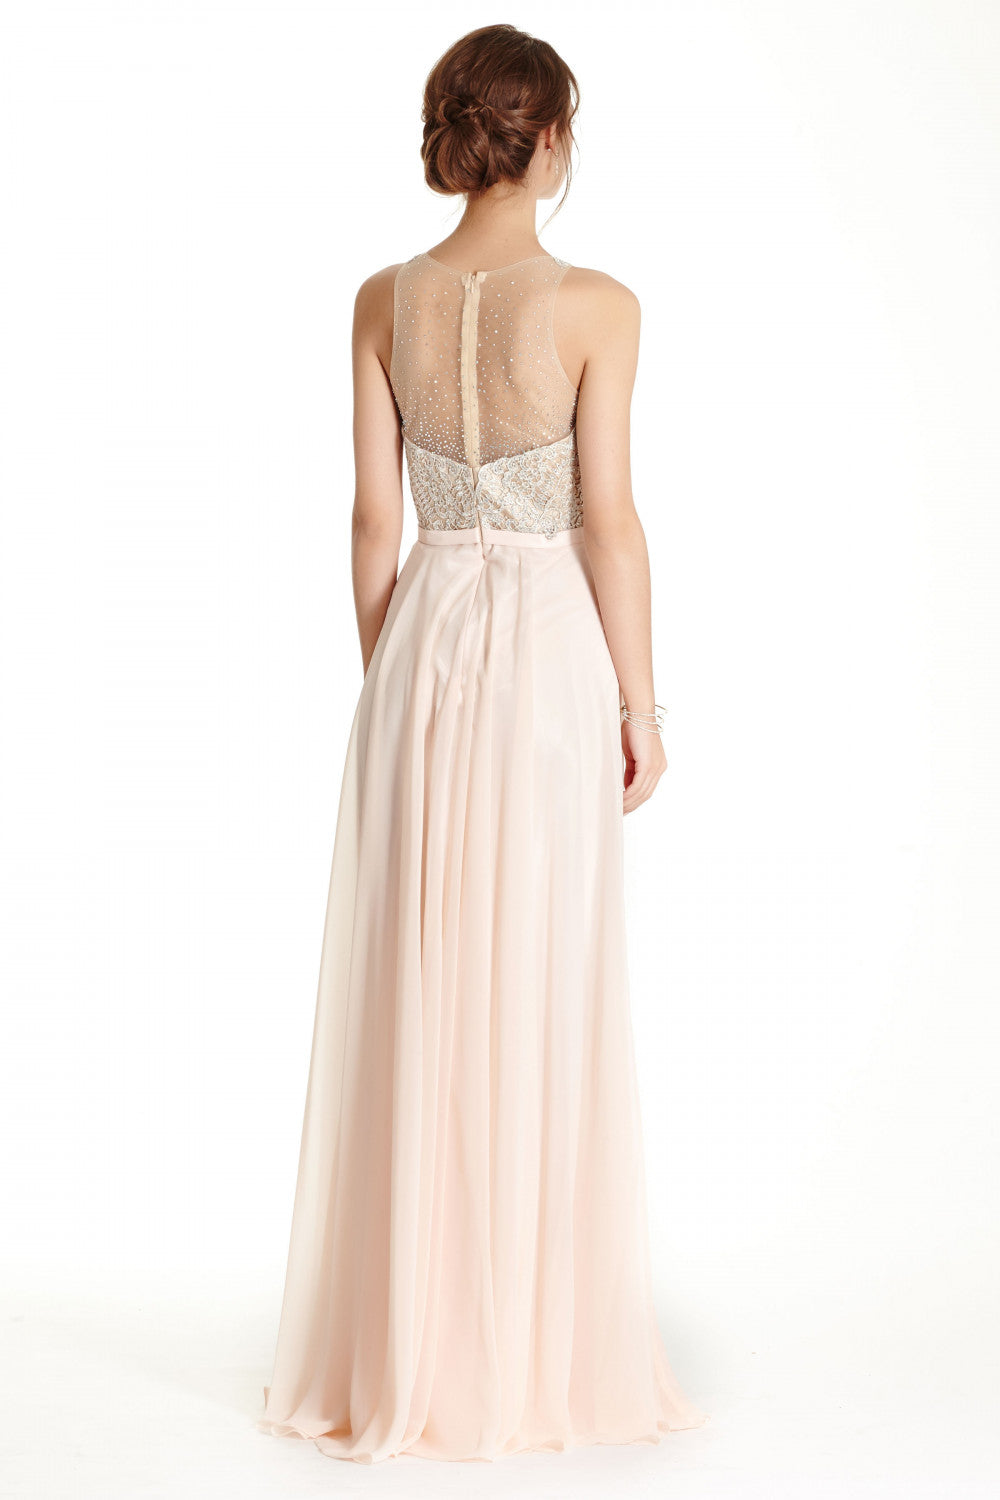 Aspeed Design -L1793 Lace Bodice A-Line Evening Dress